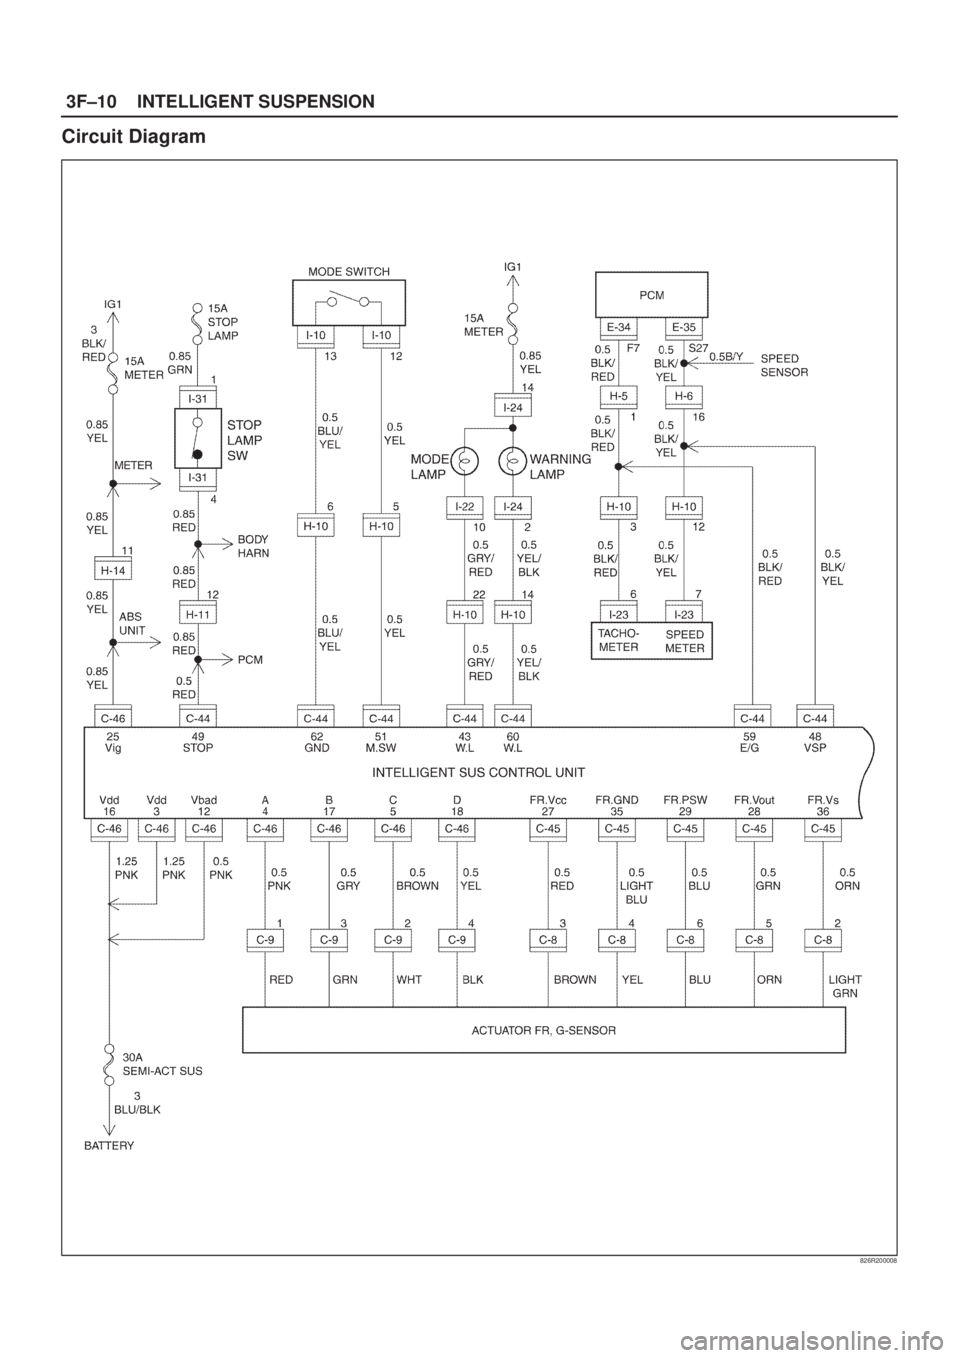 ISUZU AXIOM 2002  Service User Guide 3F±10INTELLIGENT SUSPENSION
Circuit Diagram
826R200008 